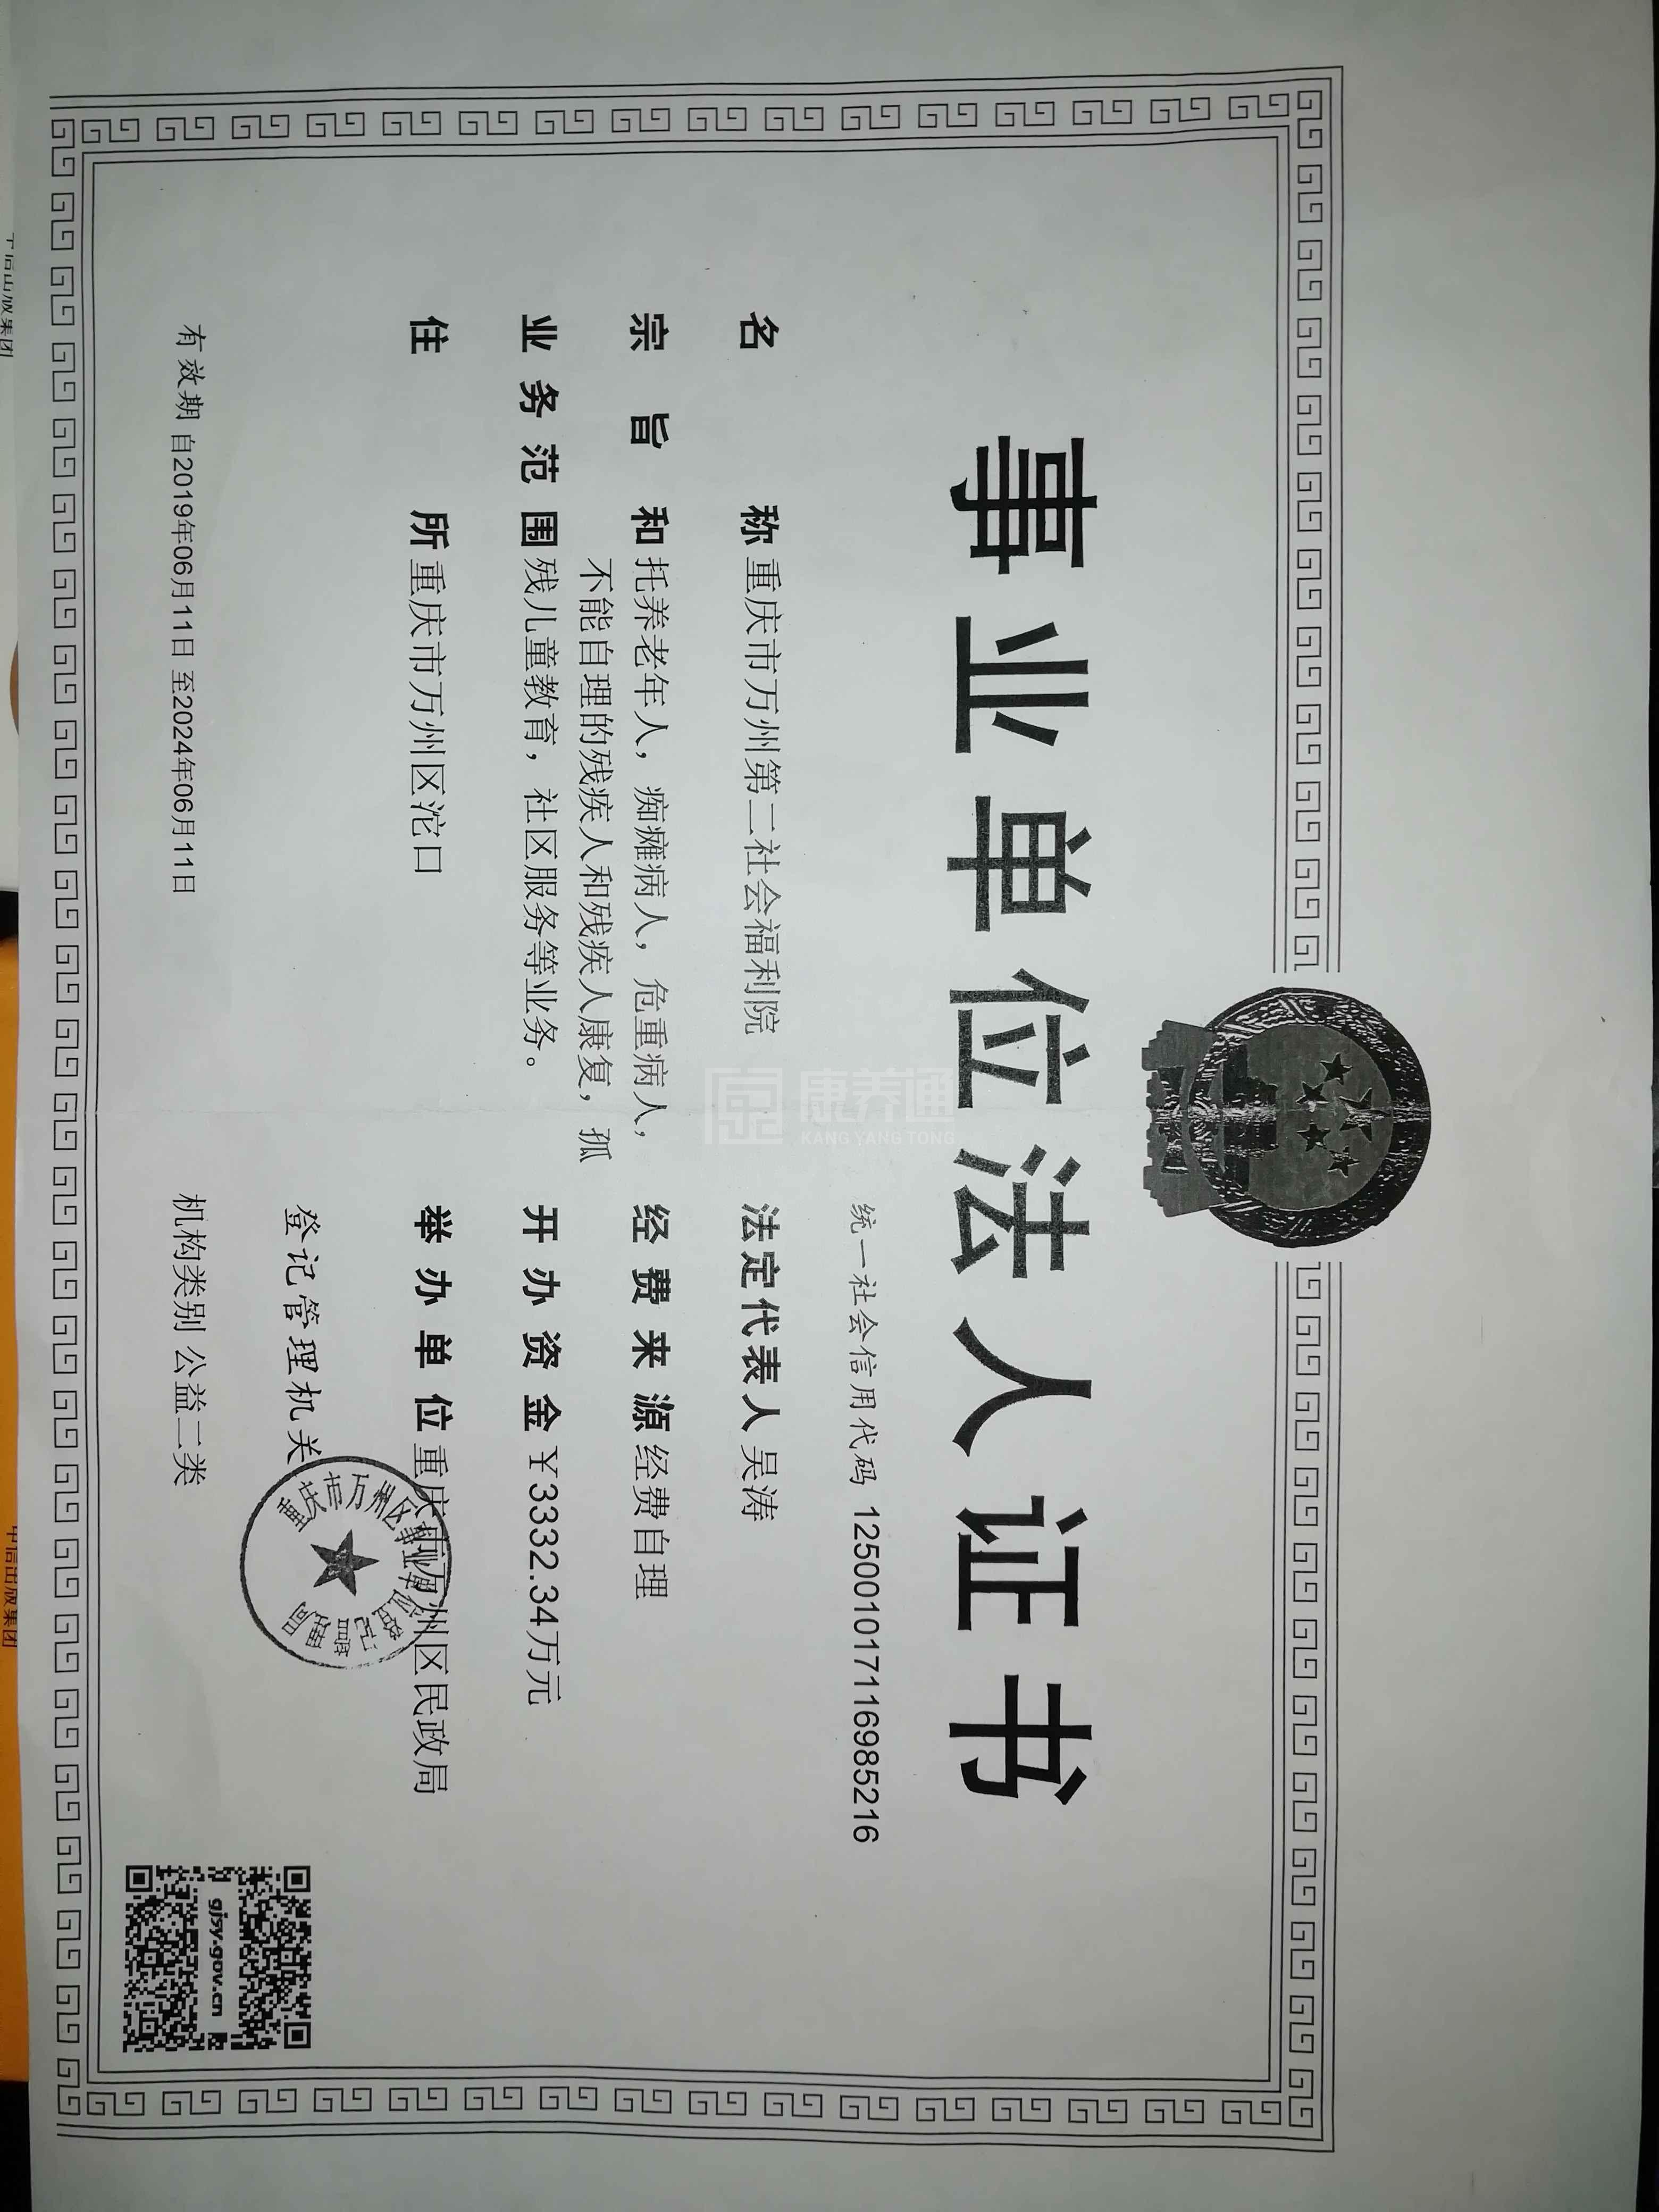 重庆市万州区长岭镇敬老院服务项目图6让长者体面而尊严地生活